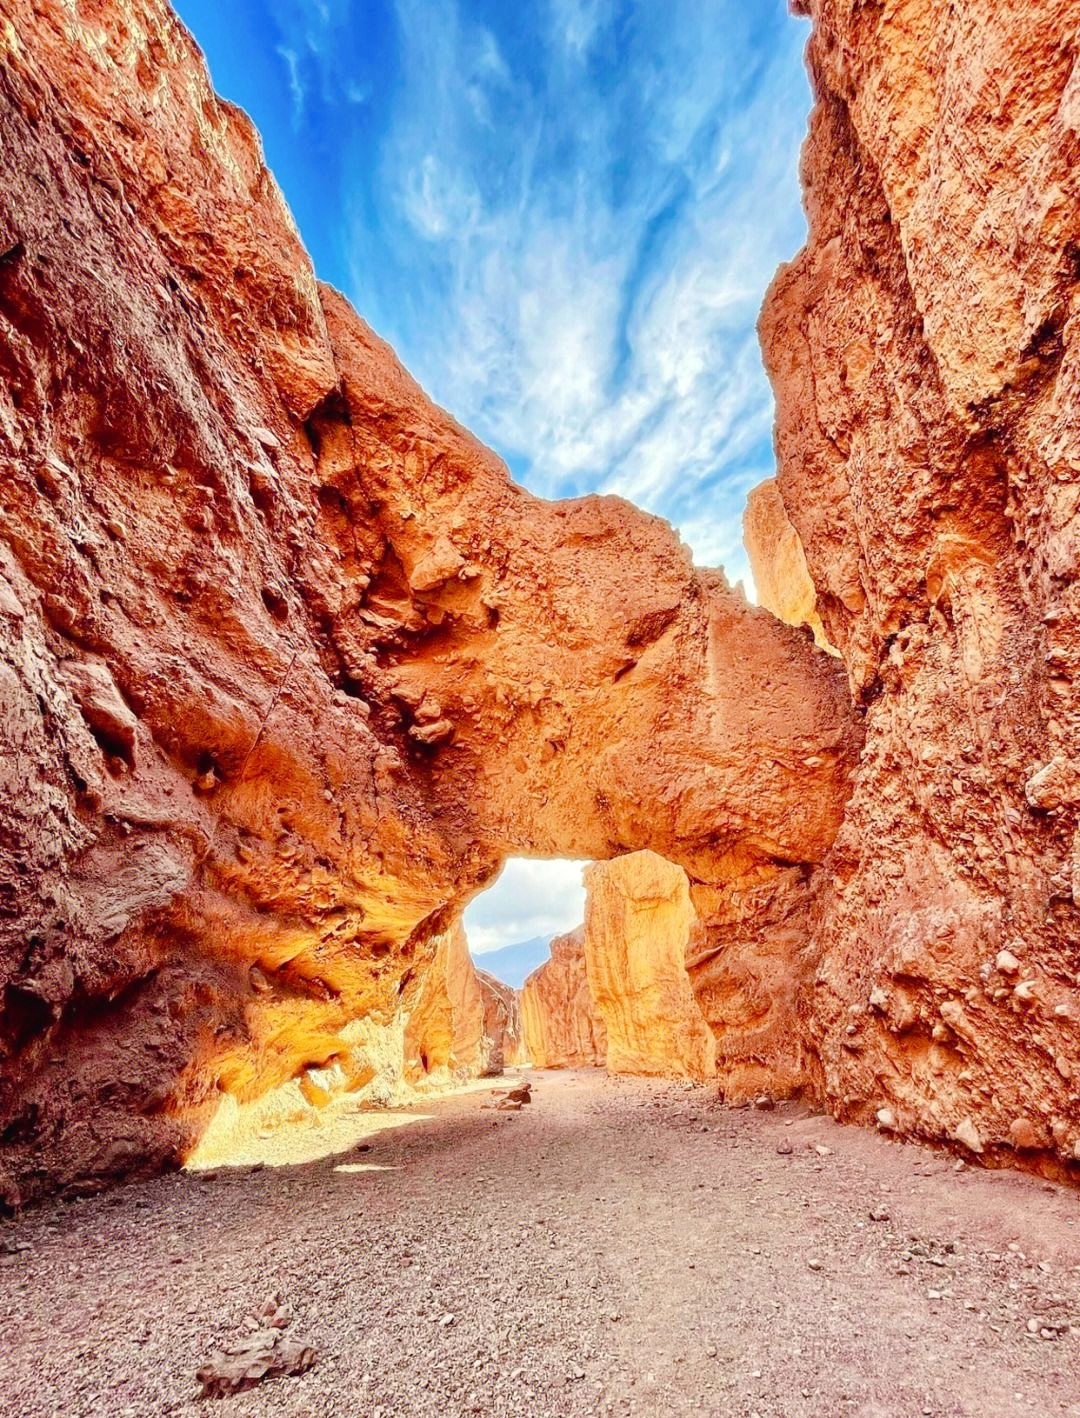 地球最热之地“死亡谷”——魅力不减,游客乐在其中